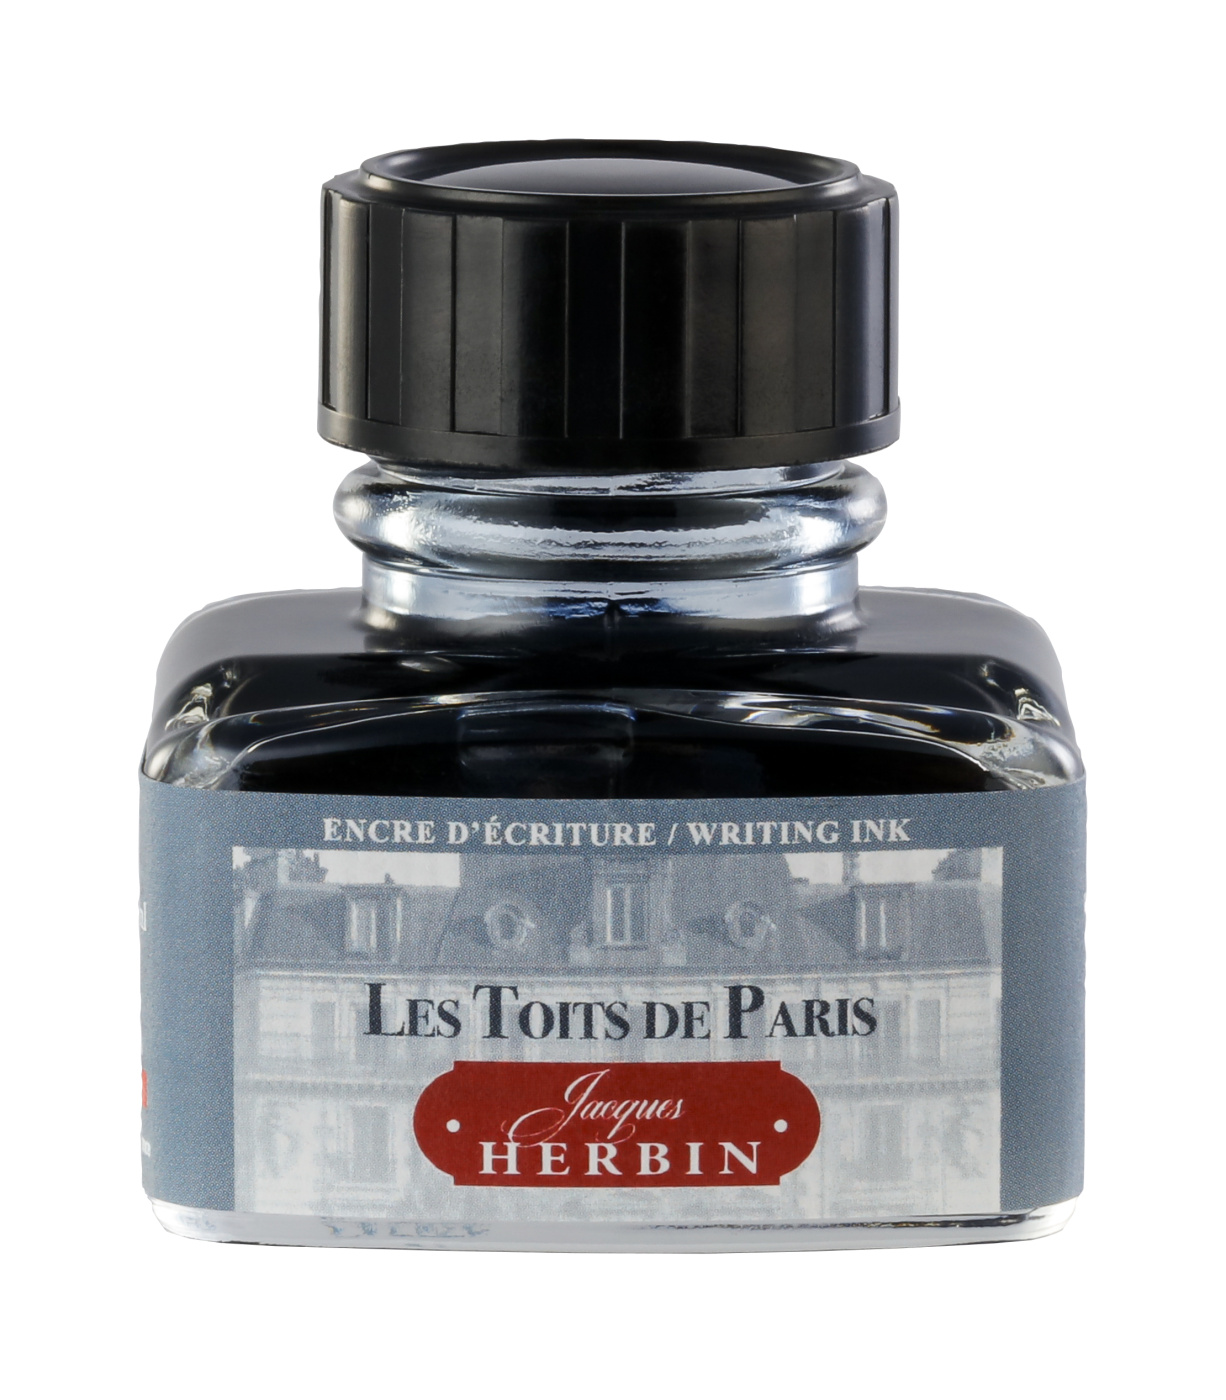 Чернила Herbin в банке 30 мл, Цвета Парижа Les Toits De Paris Серый detaille 1905 paris 1905 100